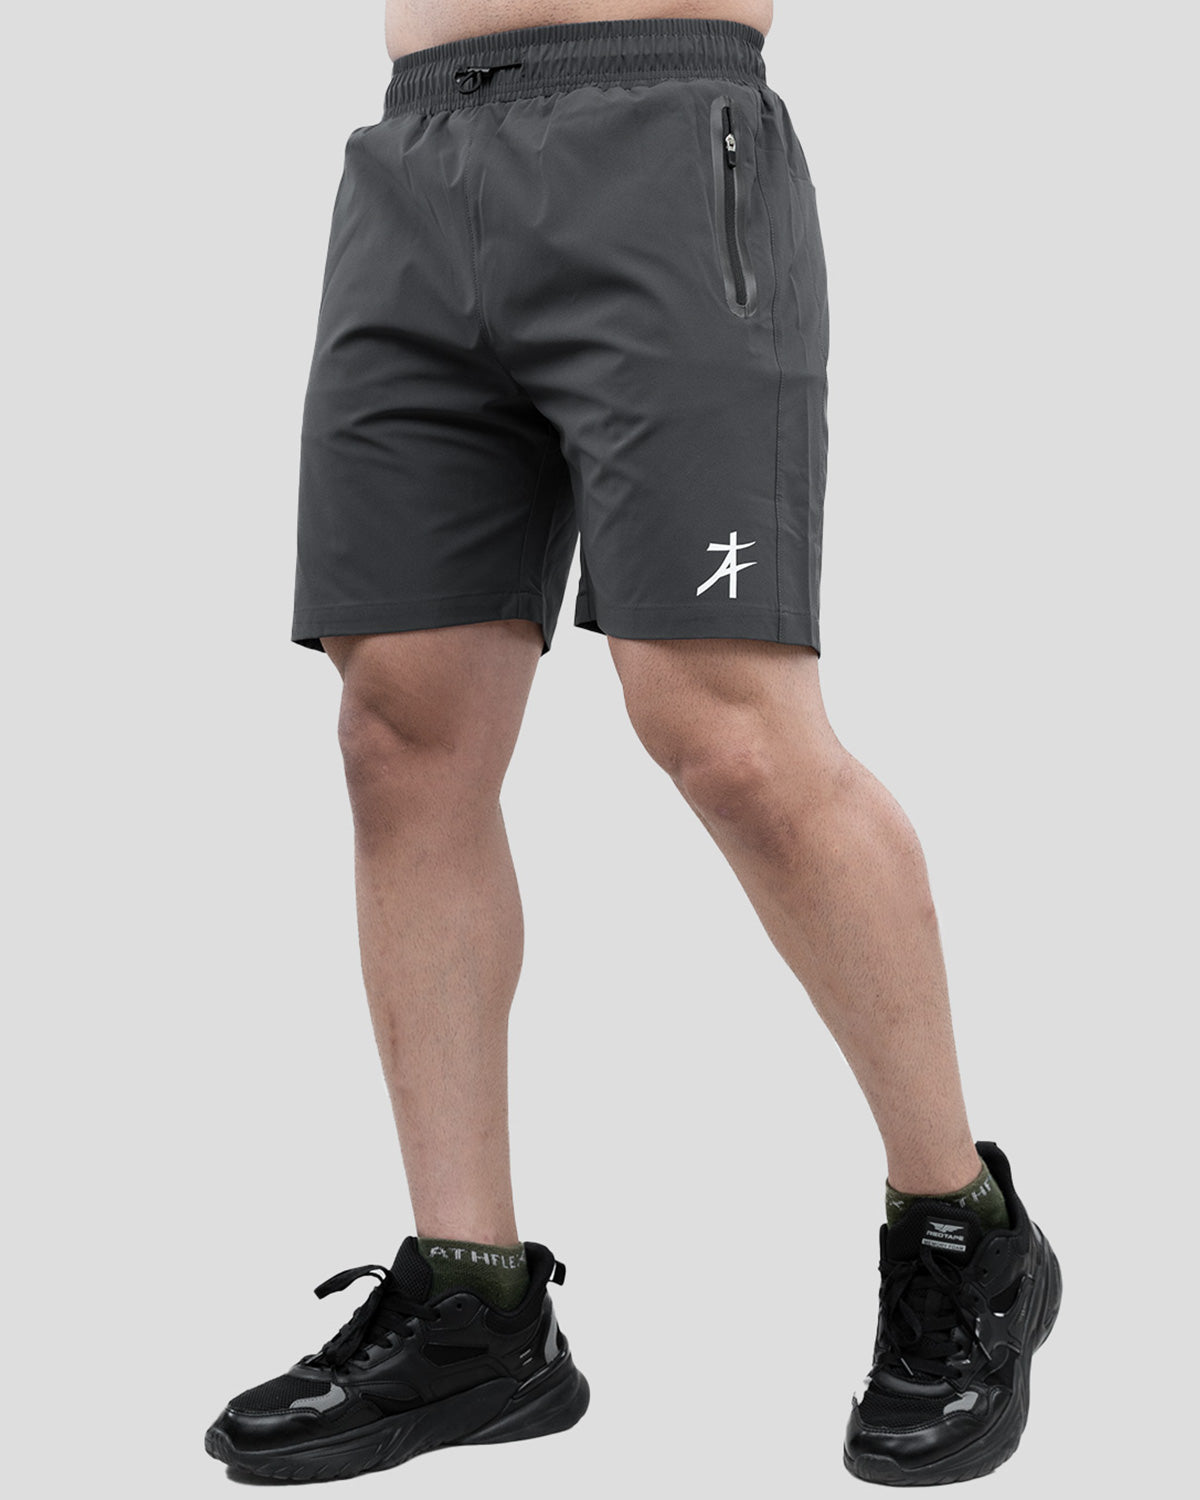 Daily Shorts (Grey)